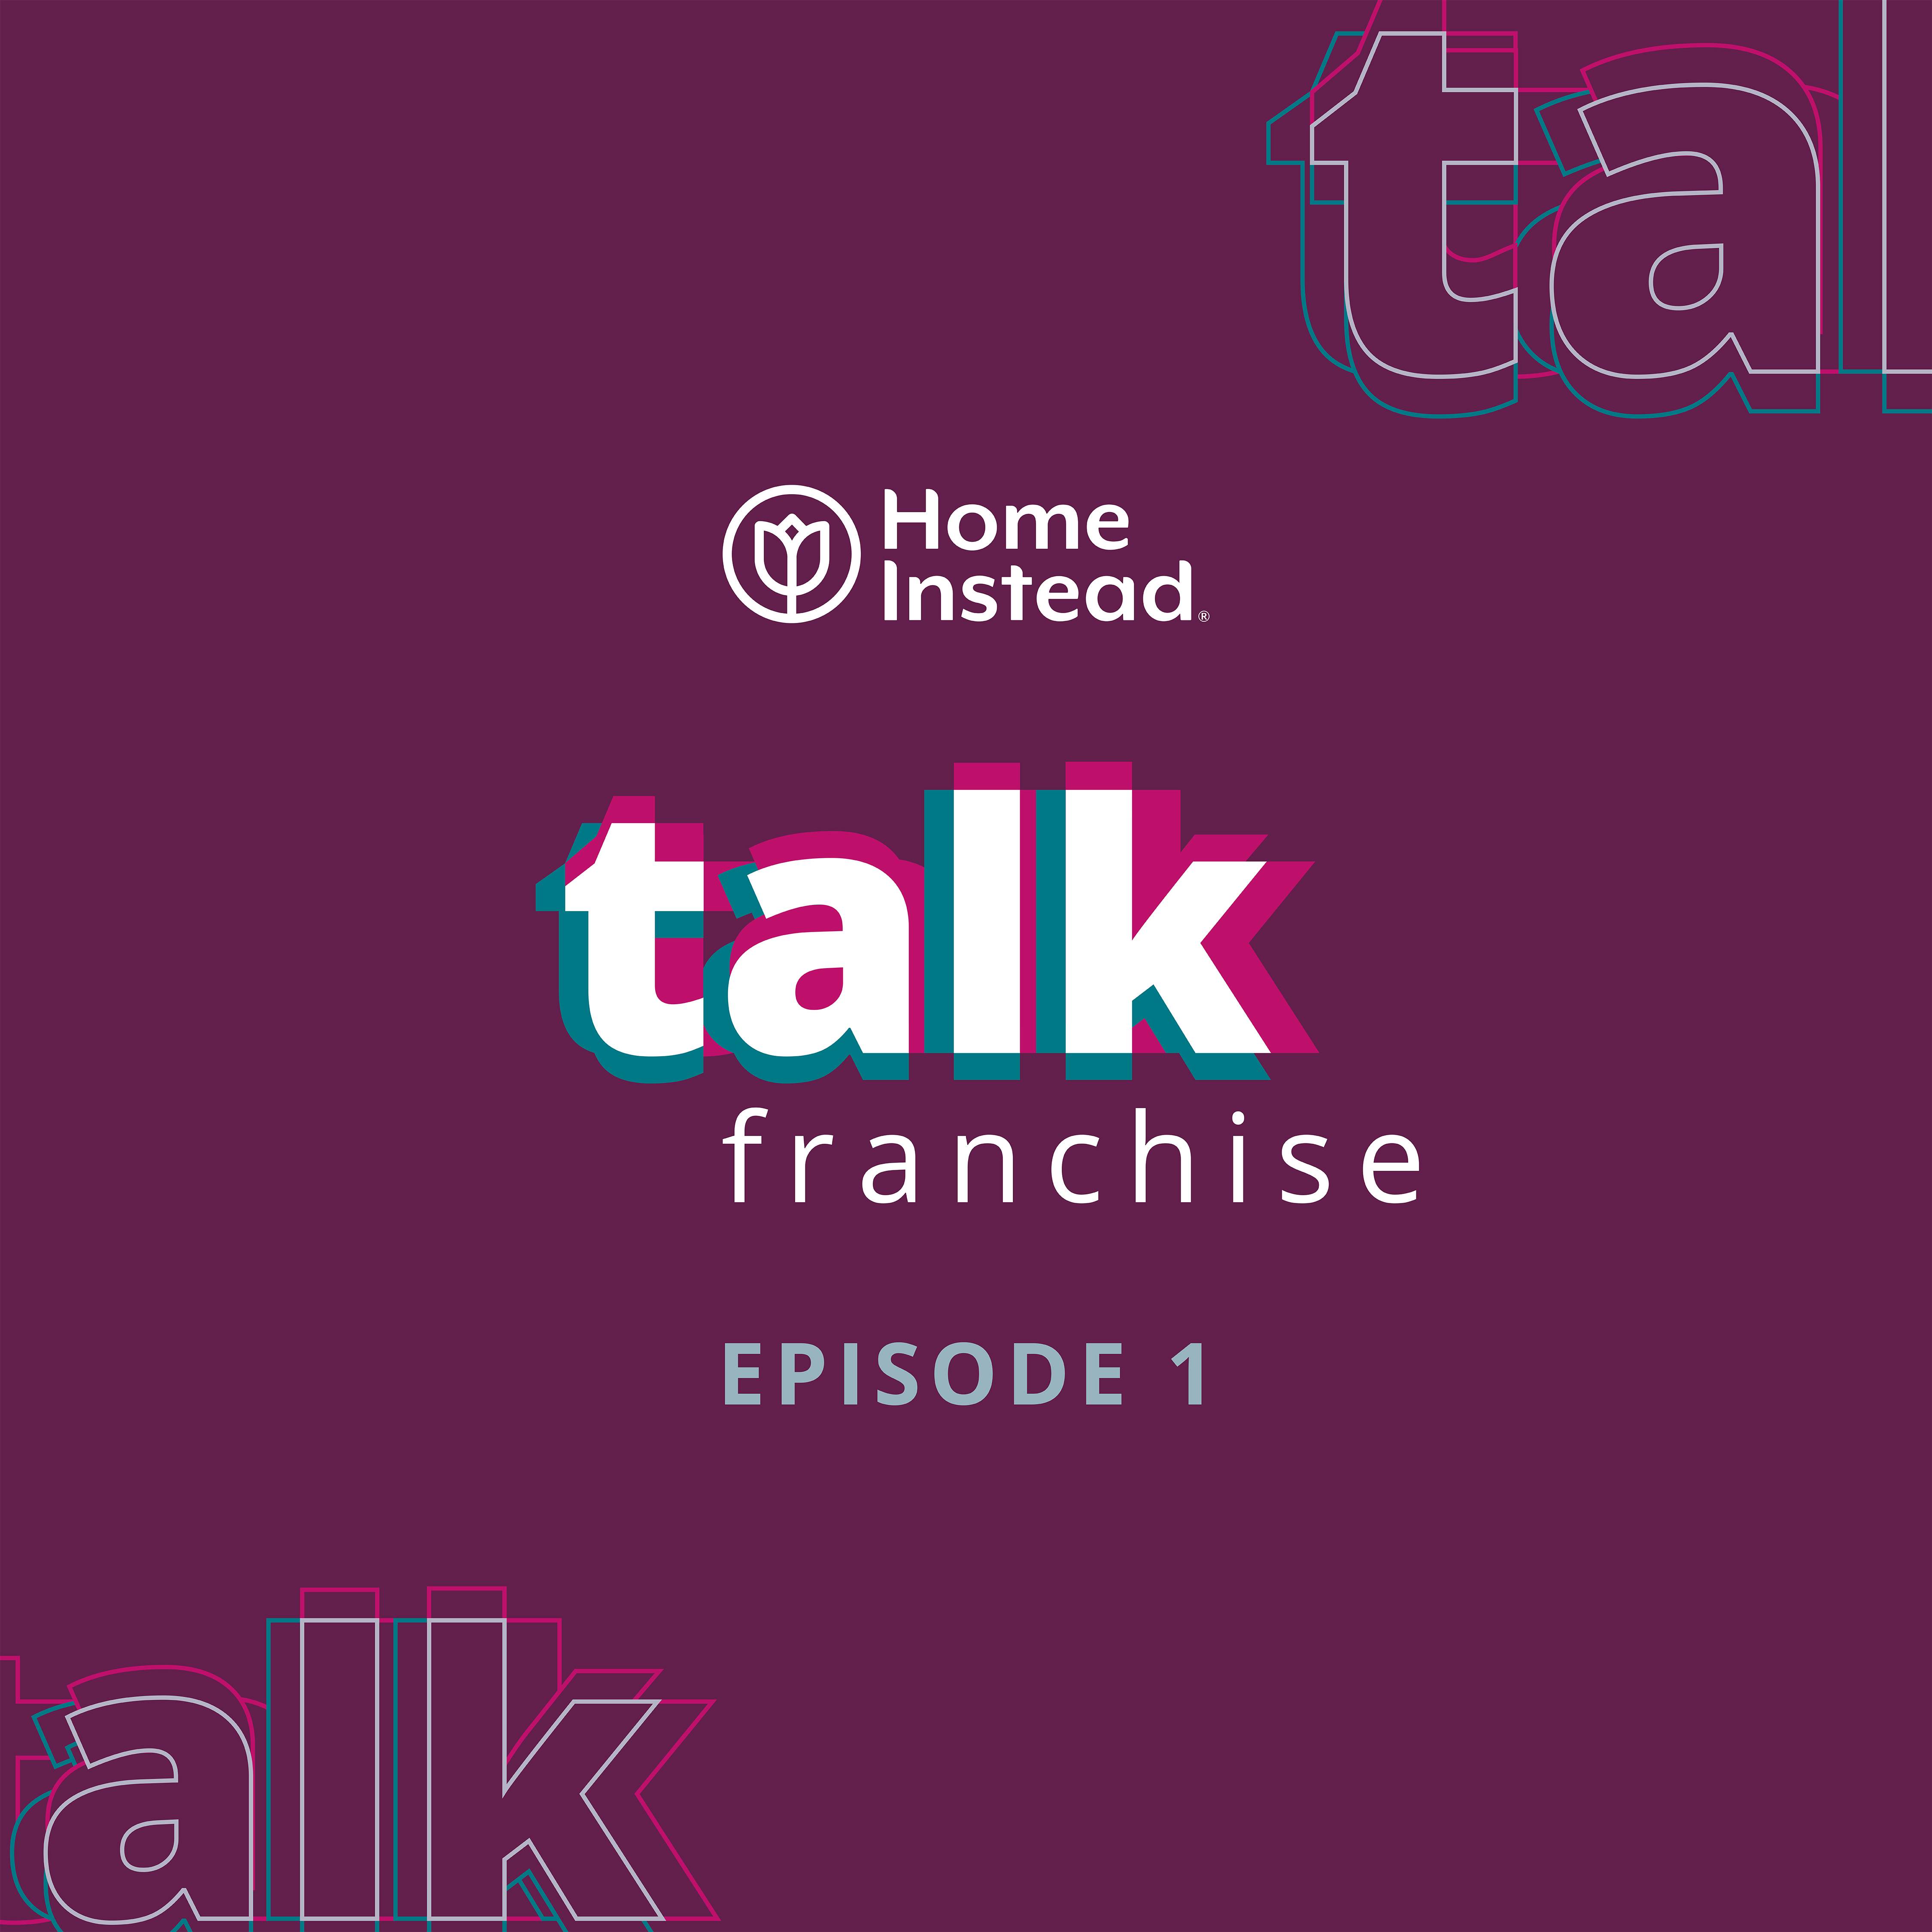 Talk franchise episode 1